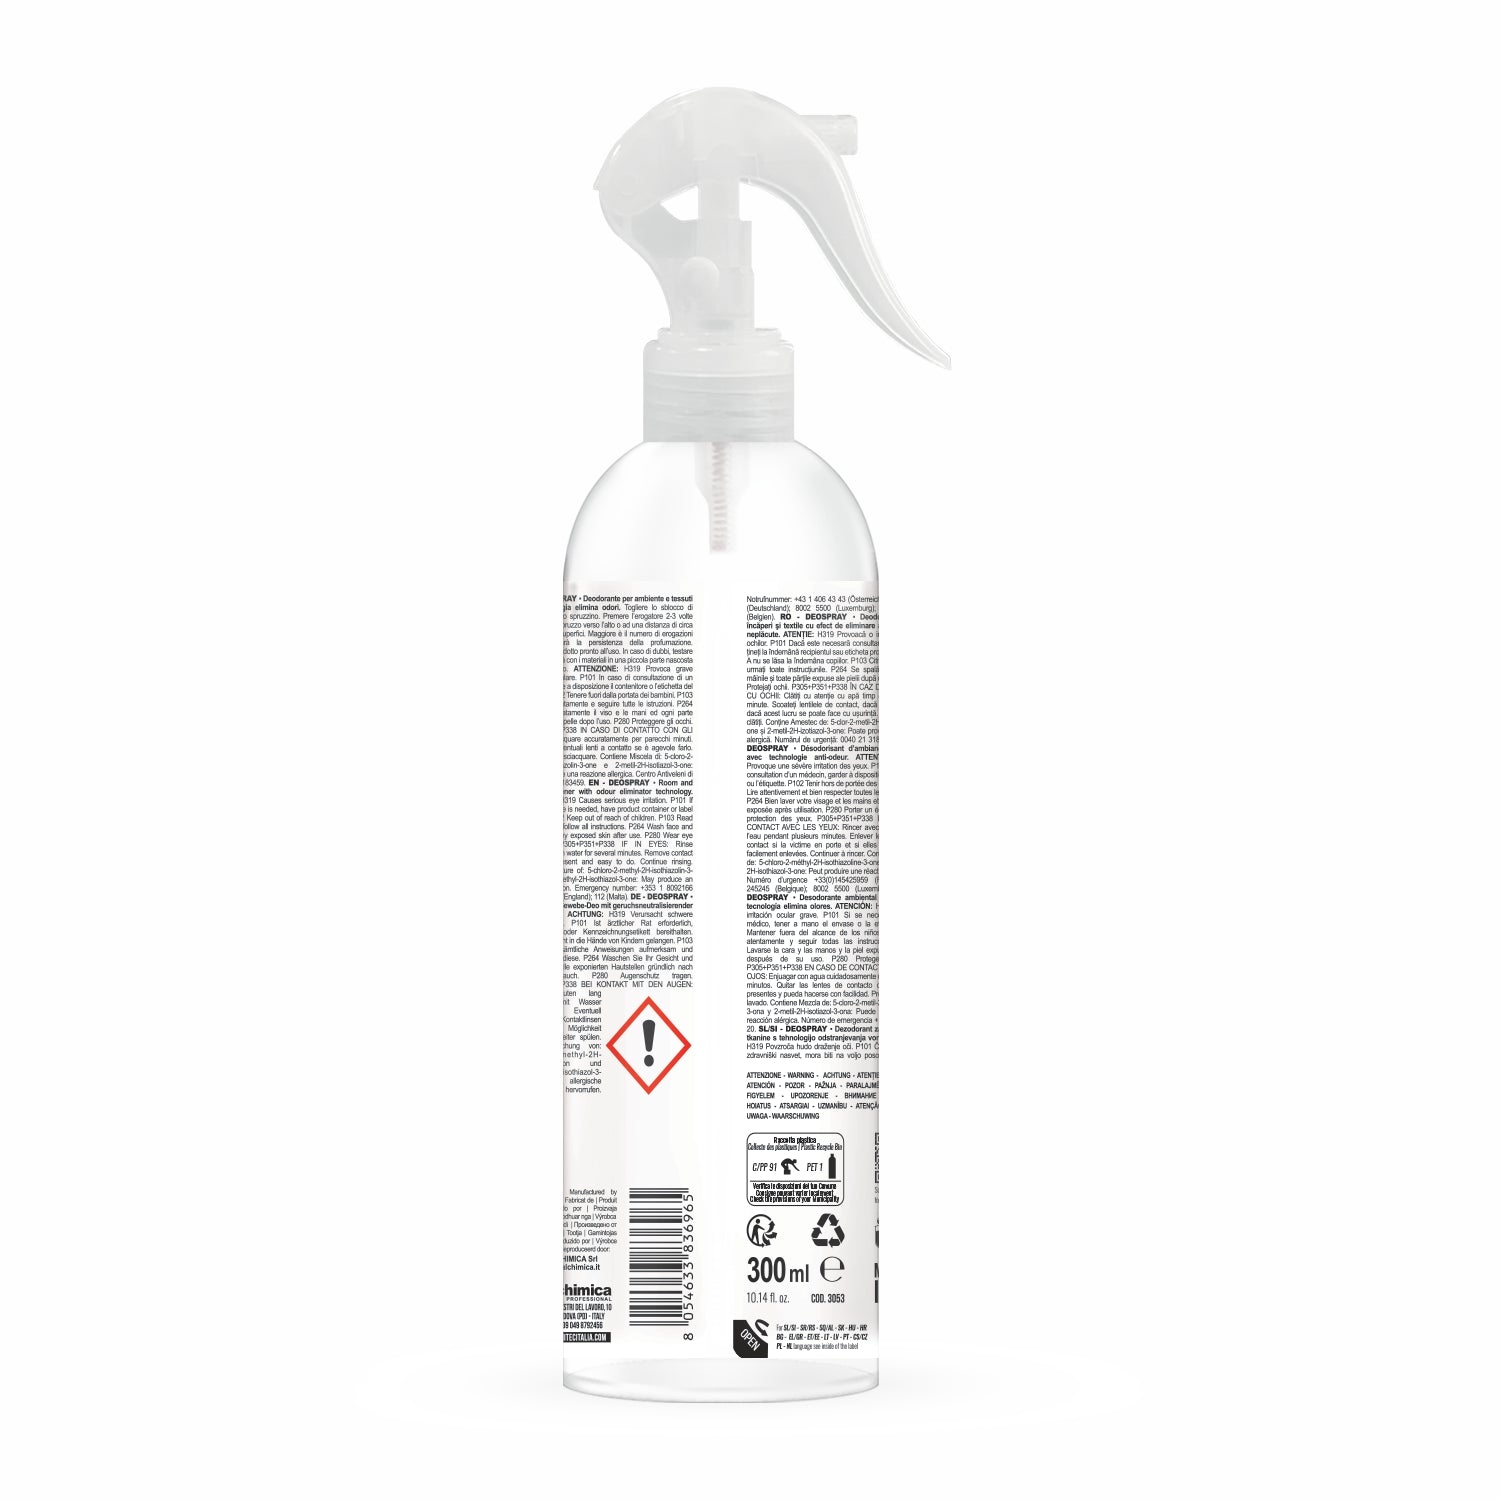 Deodorante per ambienti e tessuti con tecnologia elimina odori deo spray inspiration 300 ml sanitec 3053